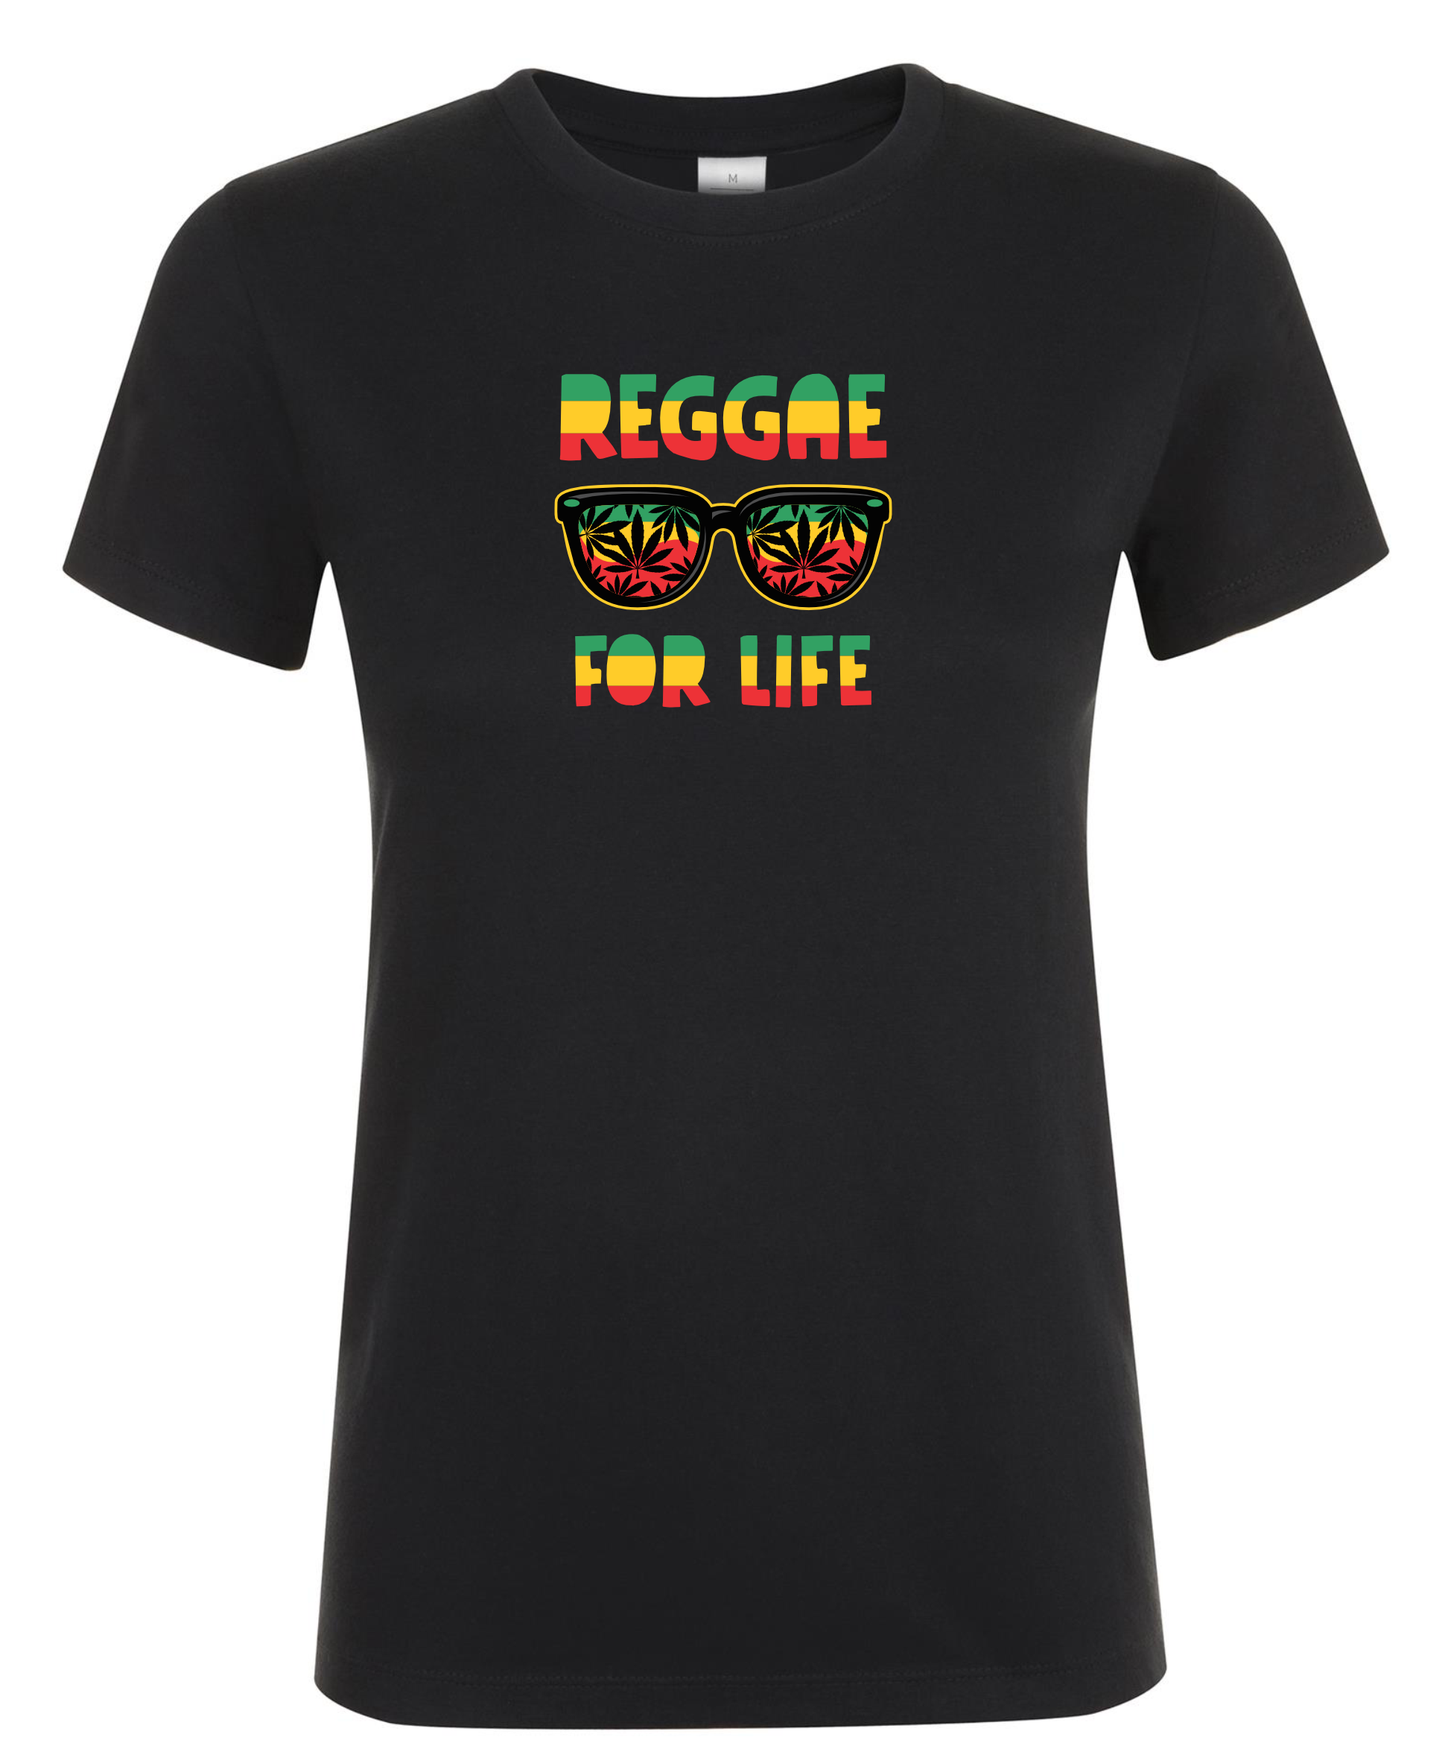 Reggae For Life